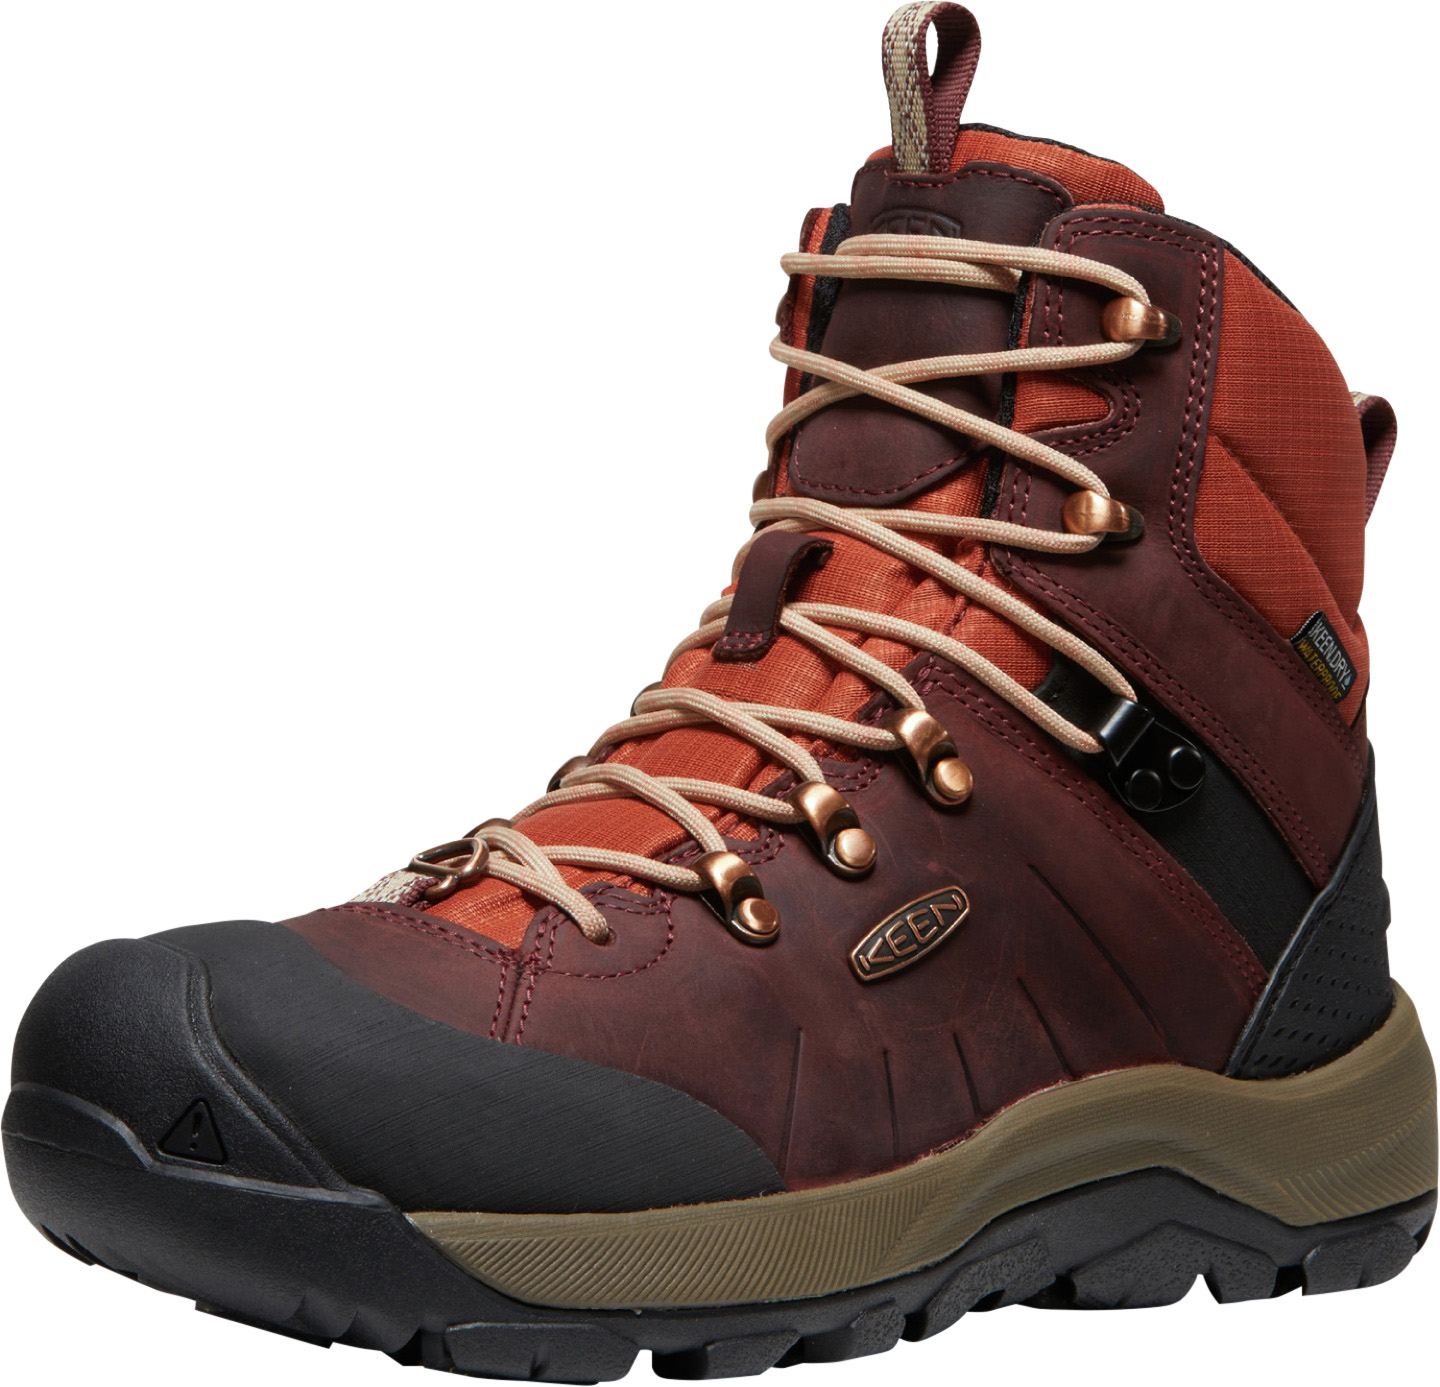 Men's High Winter Hiking Boots - Revel IV